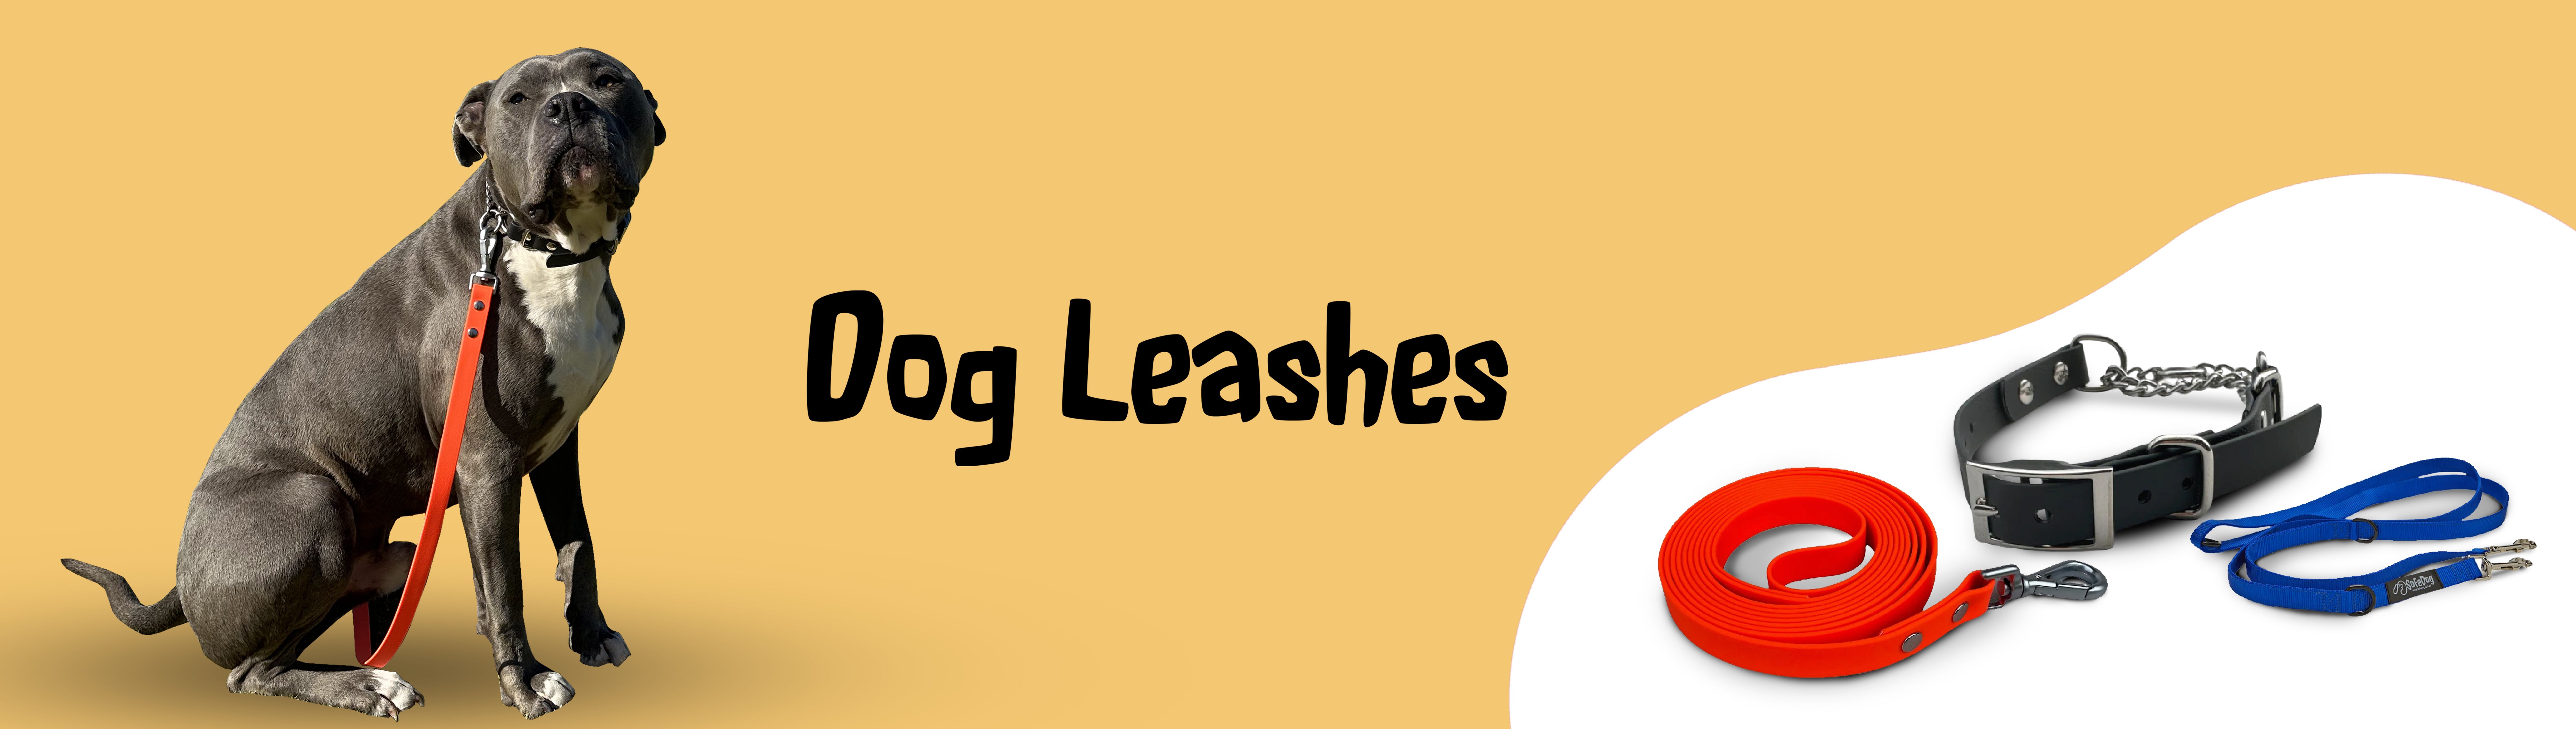 dog leashes